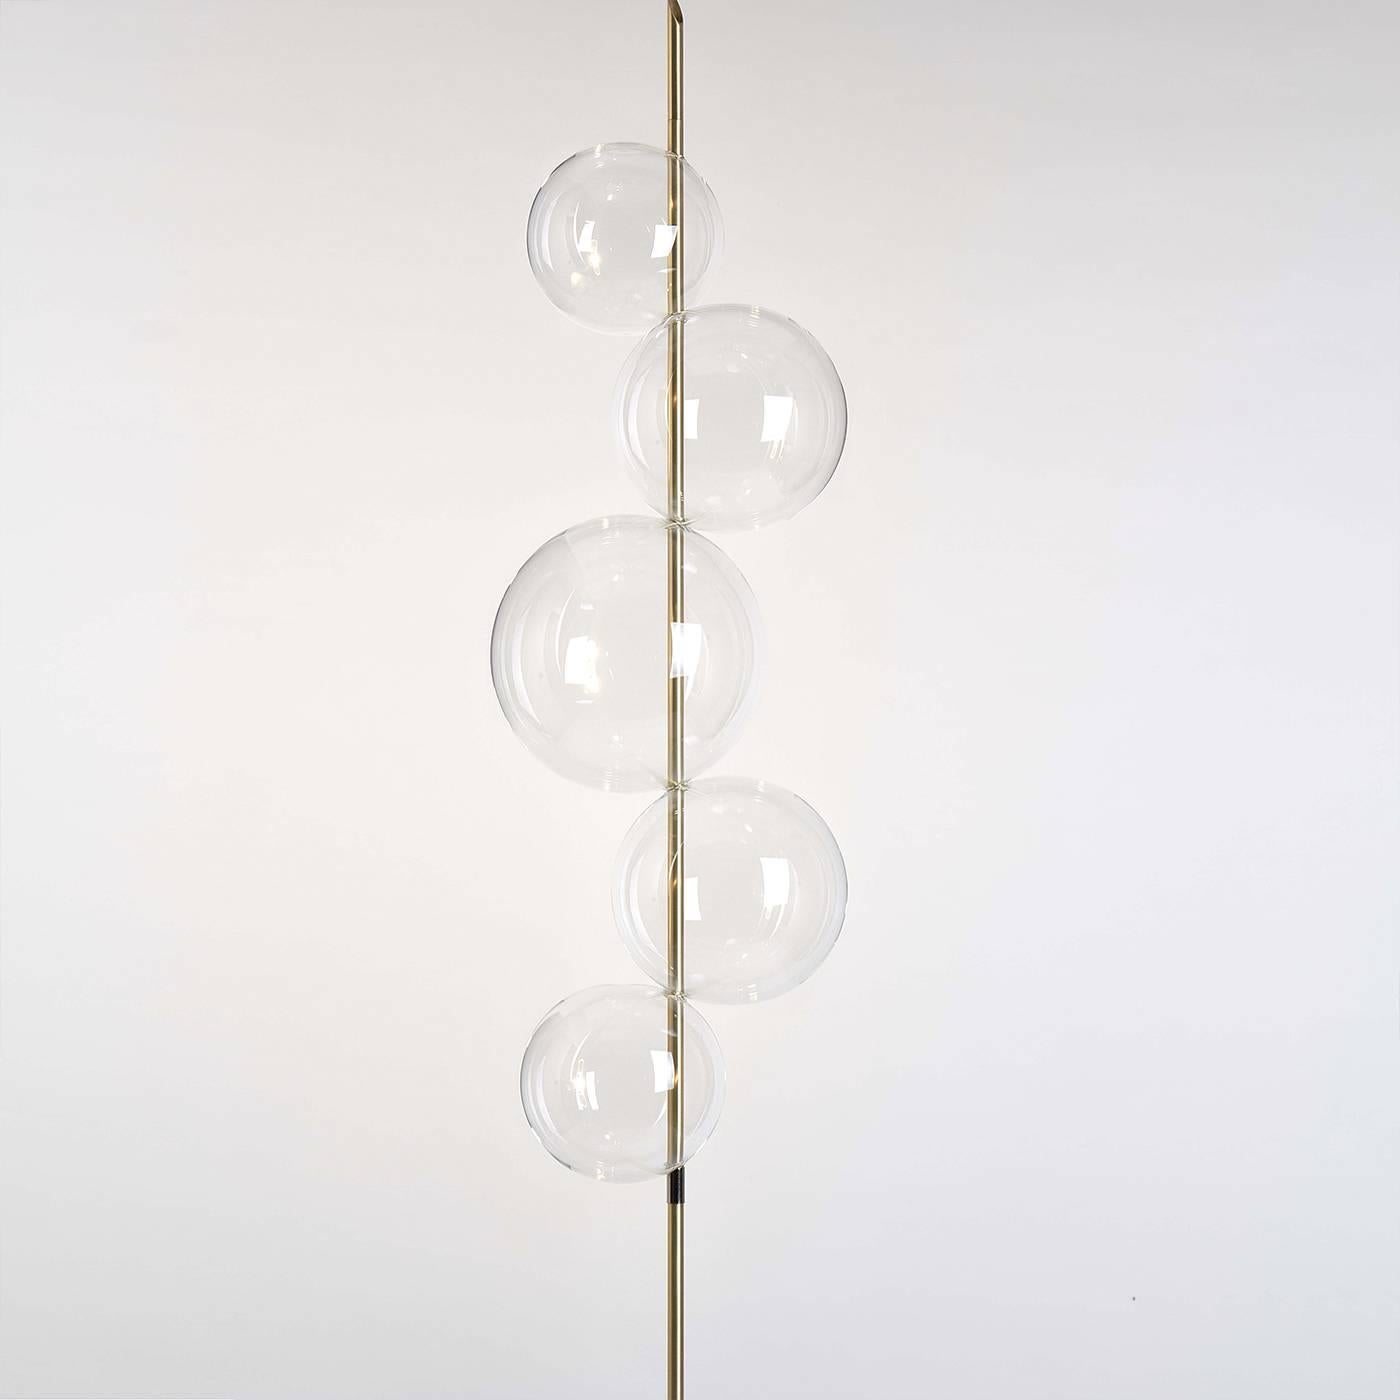 Faisant partie de la collection Grandine, ce lampadaire exquis est moderne et sophistiqué et complétera particulièrement un décor contemporain. Inspirée par la forme et la puissance de la grêle (